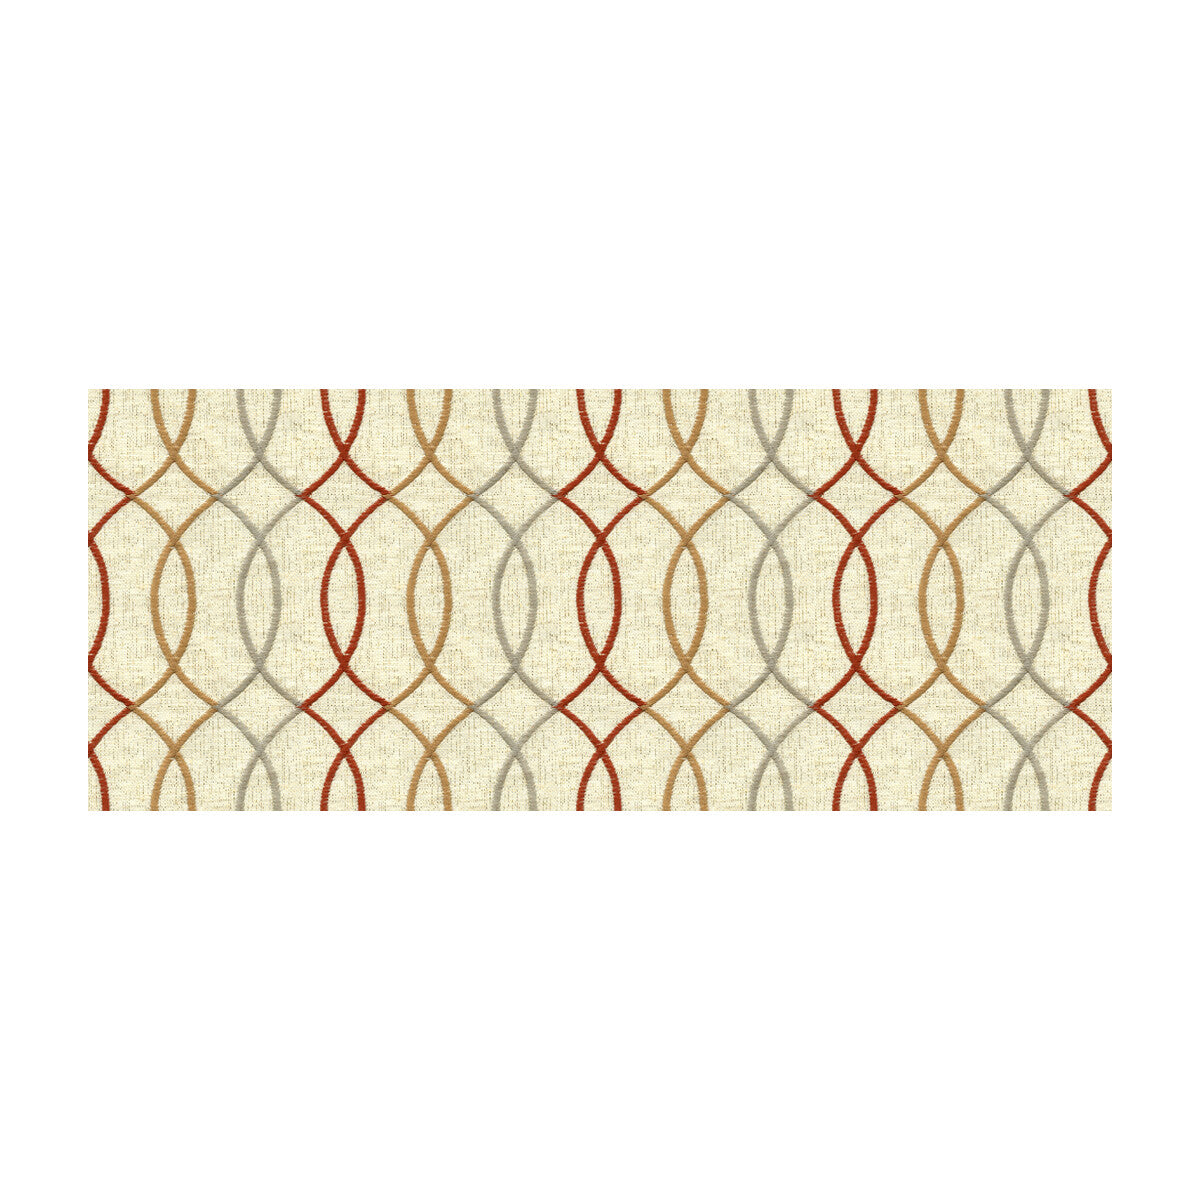 Kravet Design fabric in 33217-419 color - pattern 33217.419.0 - by Kravet Design in the Kravet Colors collection